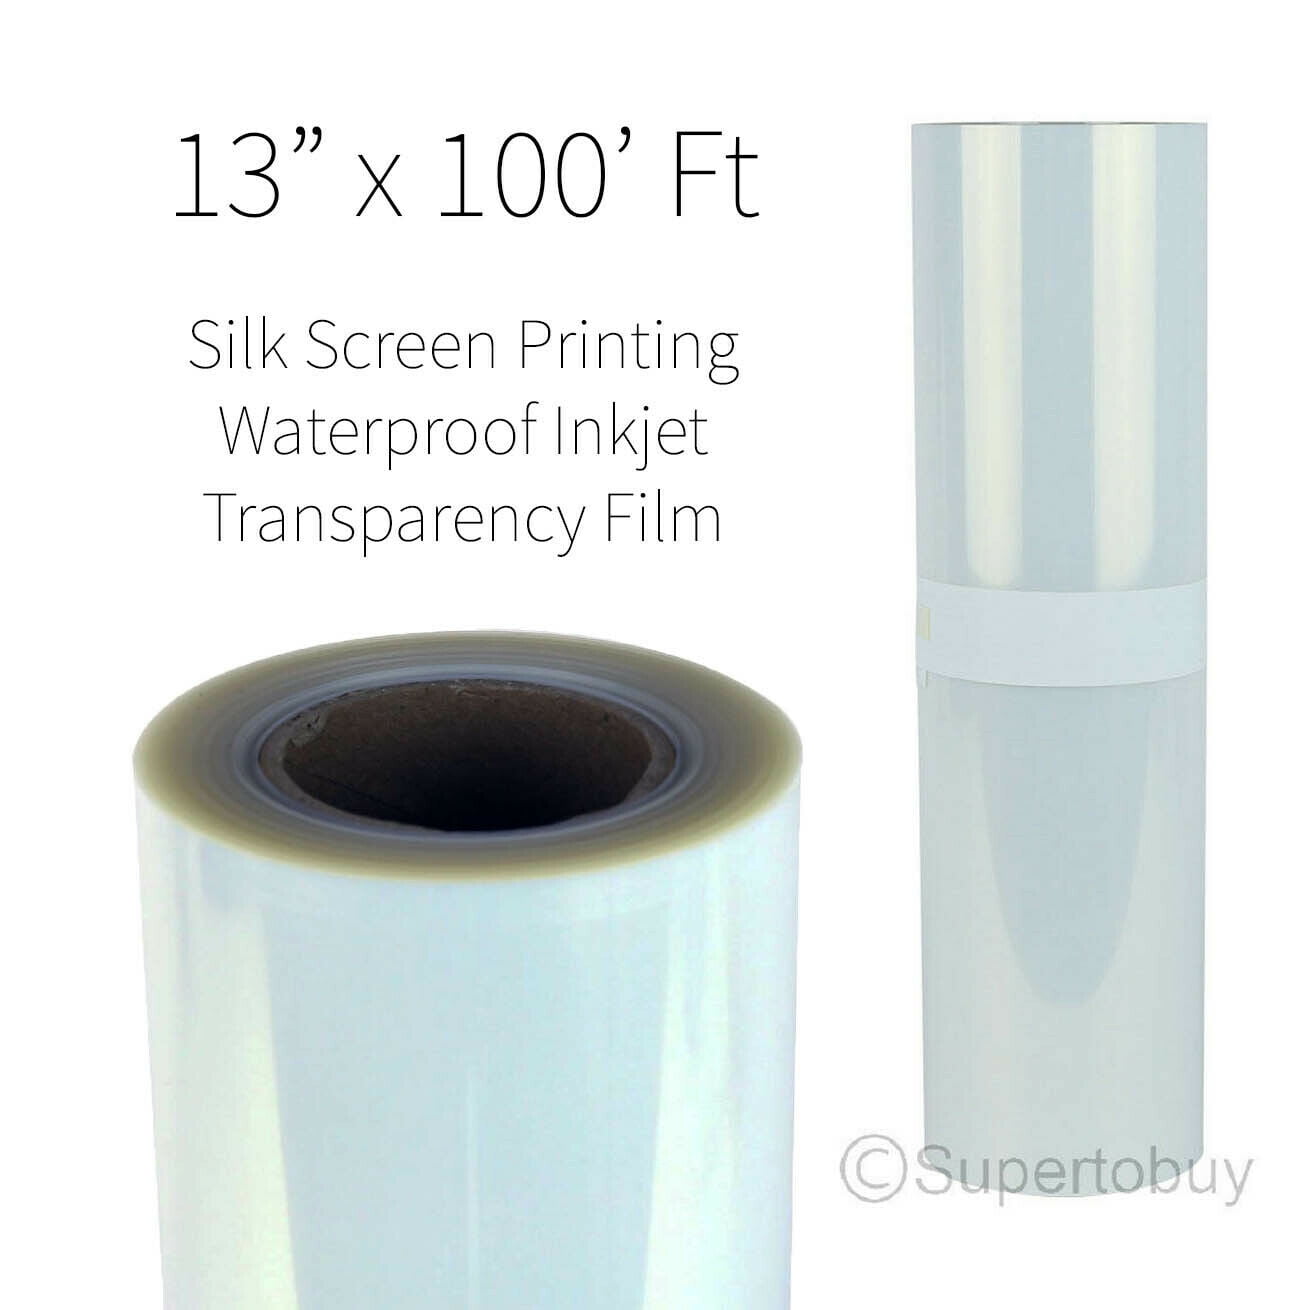 Waterproof Inkjet Transparency Film 13" x 100' /roll x 2-4mil 